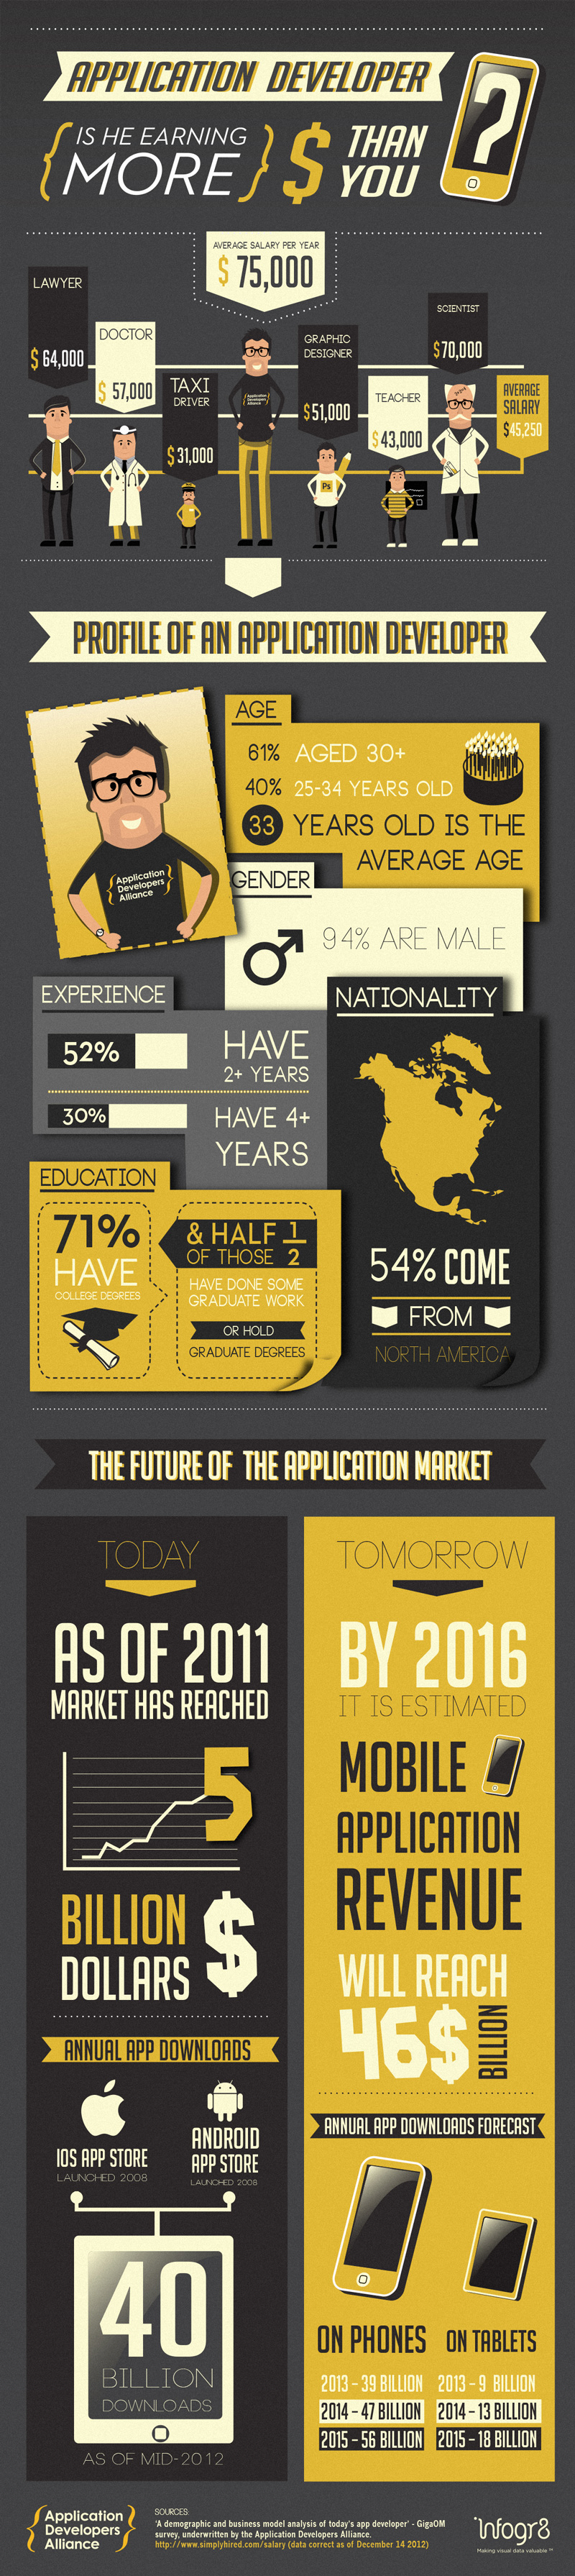 Infografía: Perfil del desarrollador de aplicaciones y repaso a las perspectivas del sector